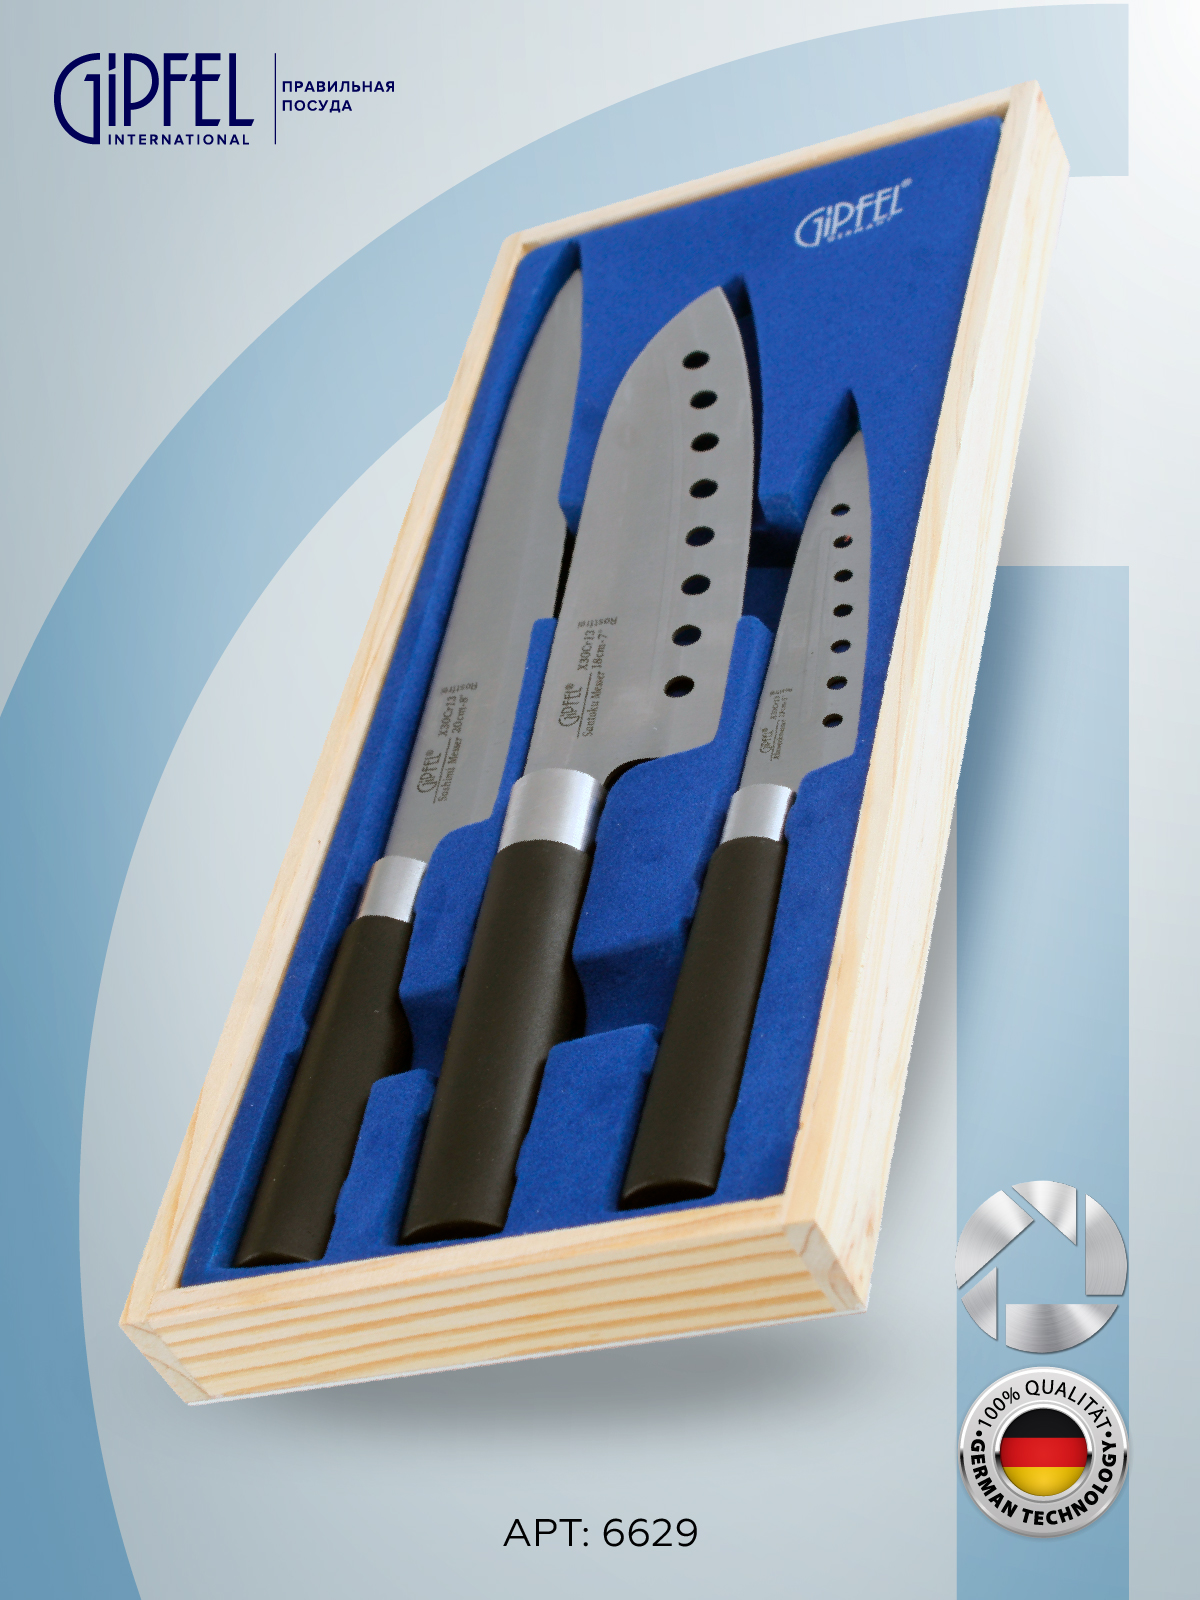 Набор ножей GIPFEL 6629 3 шт